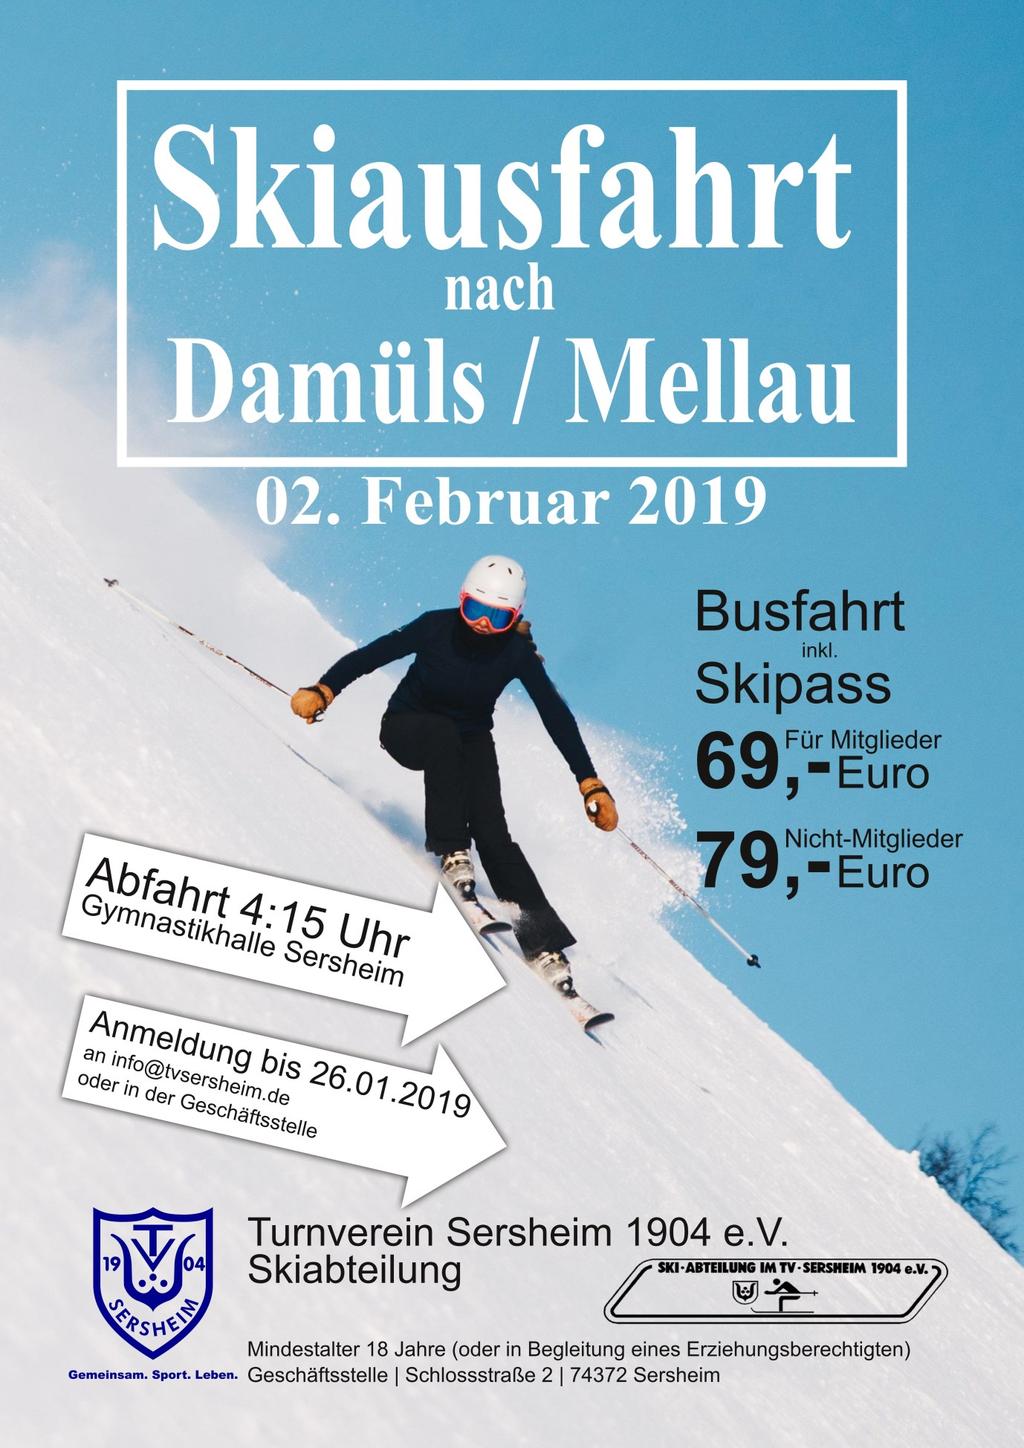 Wir freuen uns bekannt geben zu dürfen, dass im Jahr 2019 der TV Sersheim in Kooperation mit der Skiabteilung eine gemeinsam Skiausfahrt nach Damüls / Mellau organisiert.